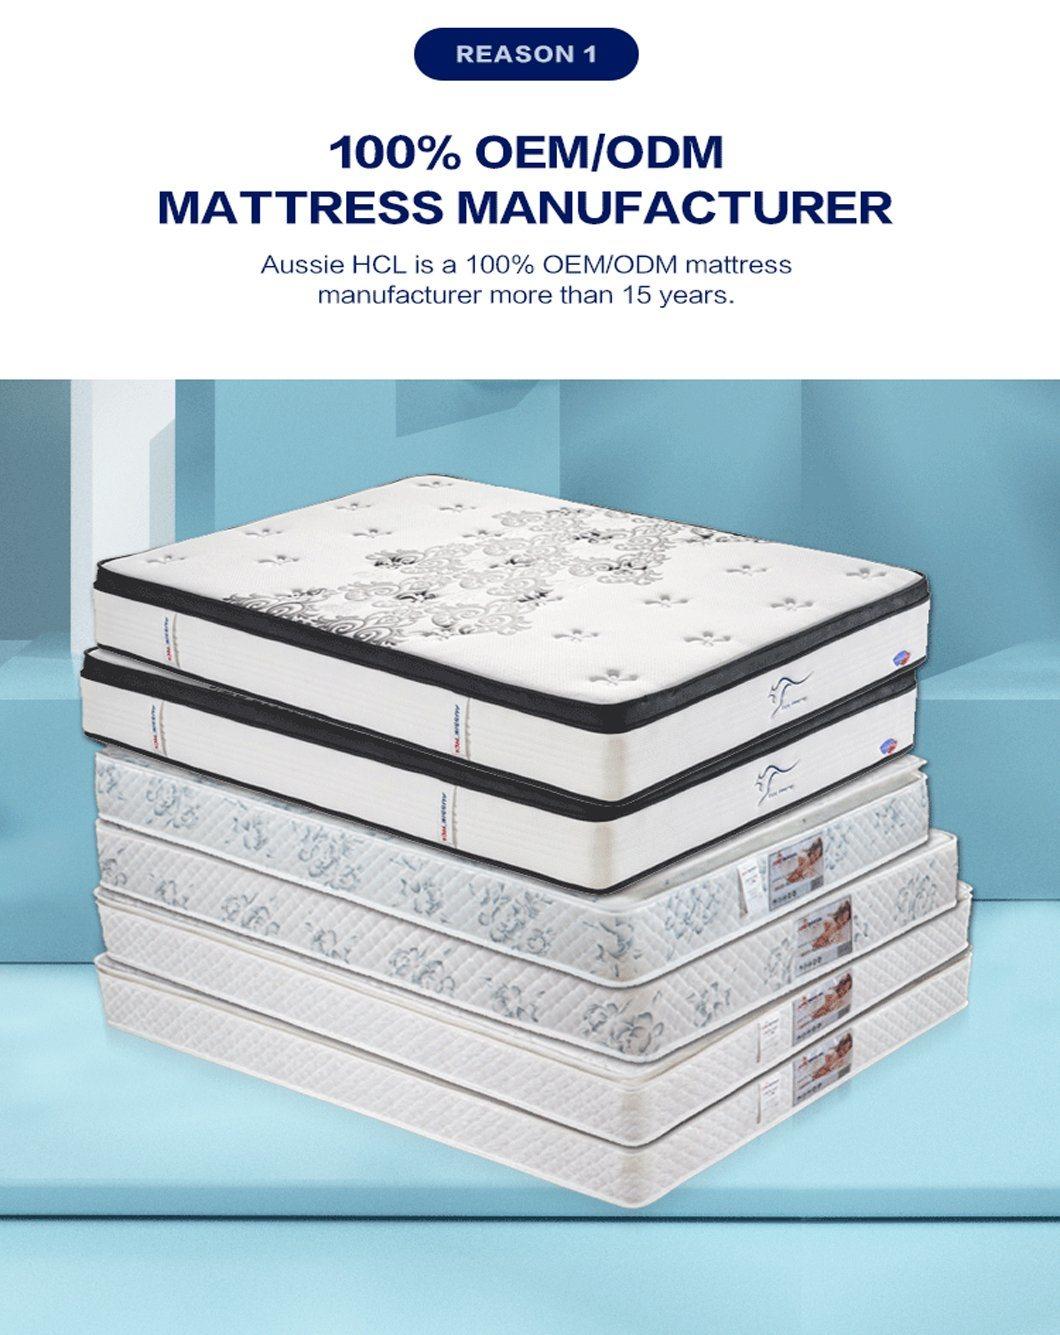 The Best Factory Aussie Modern Twin Single King Full Size Cool Gel Memory Foam Mattress in a Box